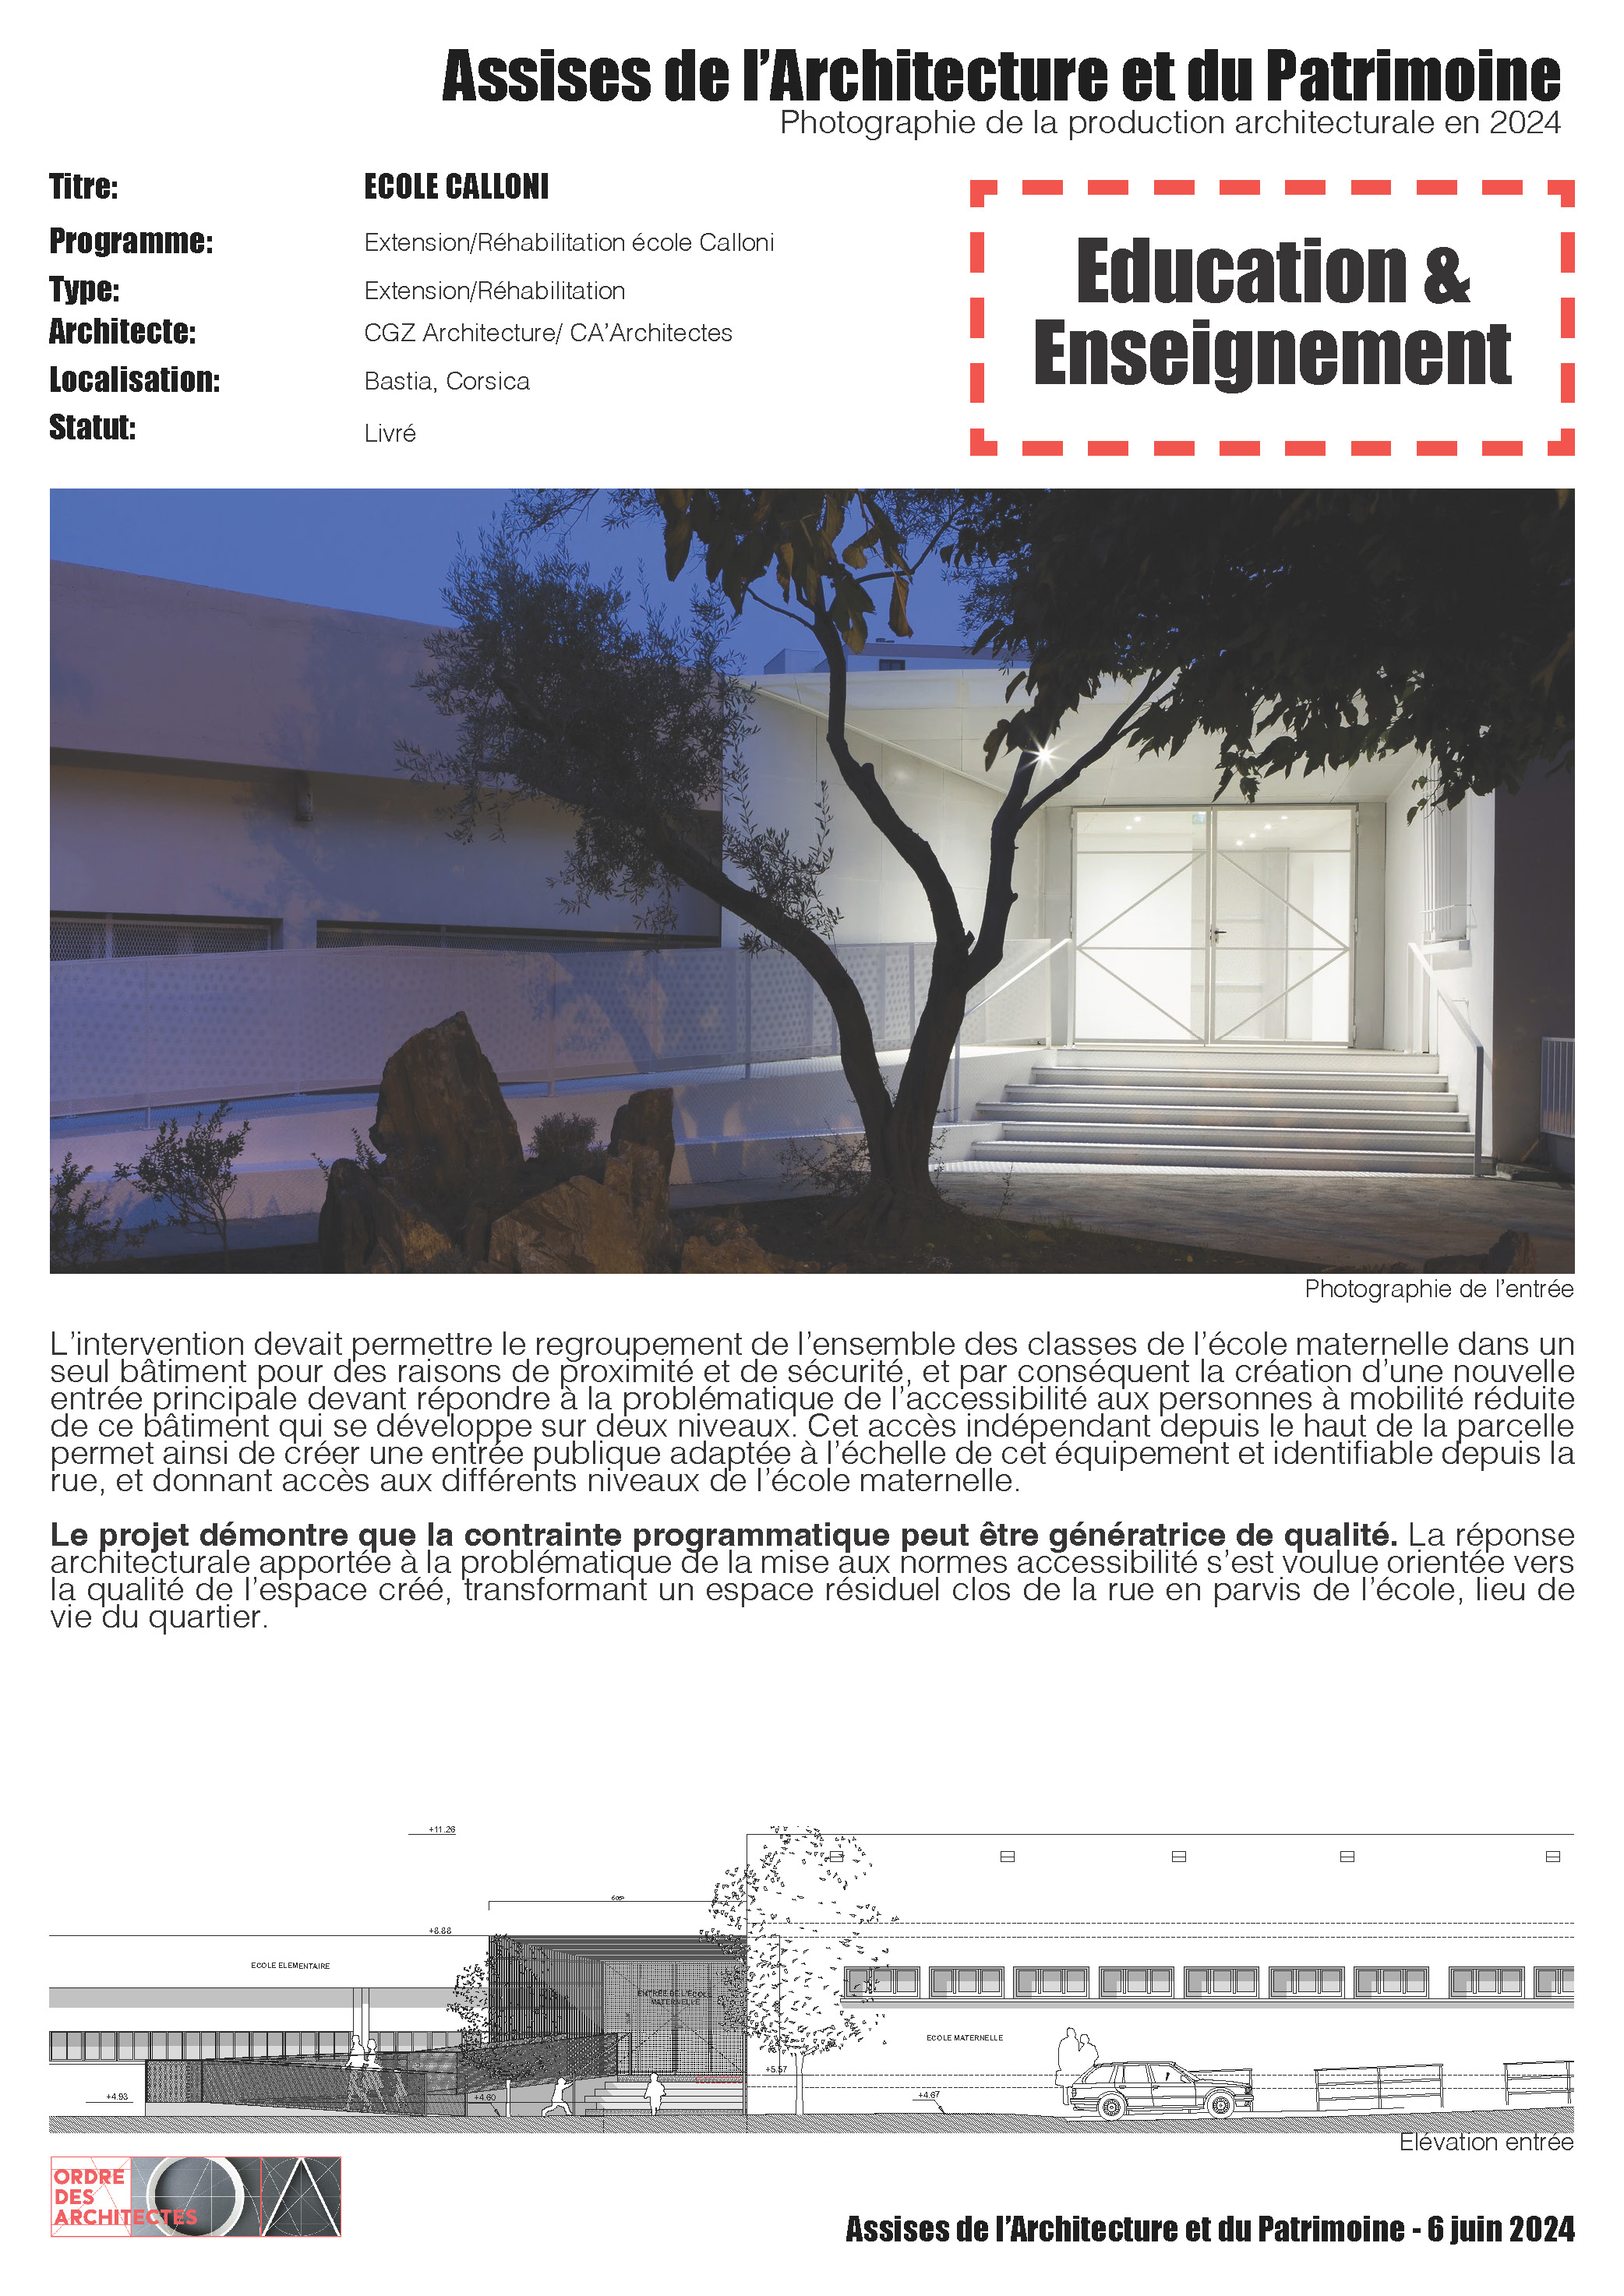 Ecole Calloni - CGZ Architecture + CA'Architectes - Bastia